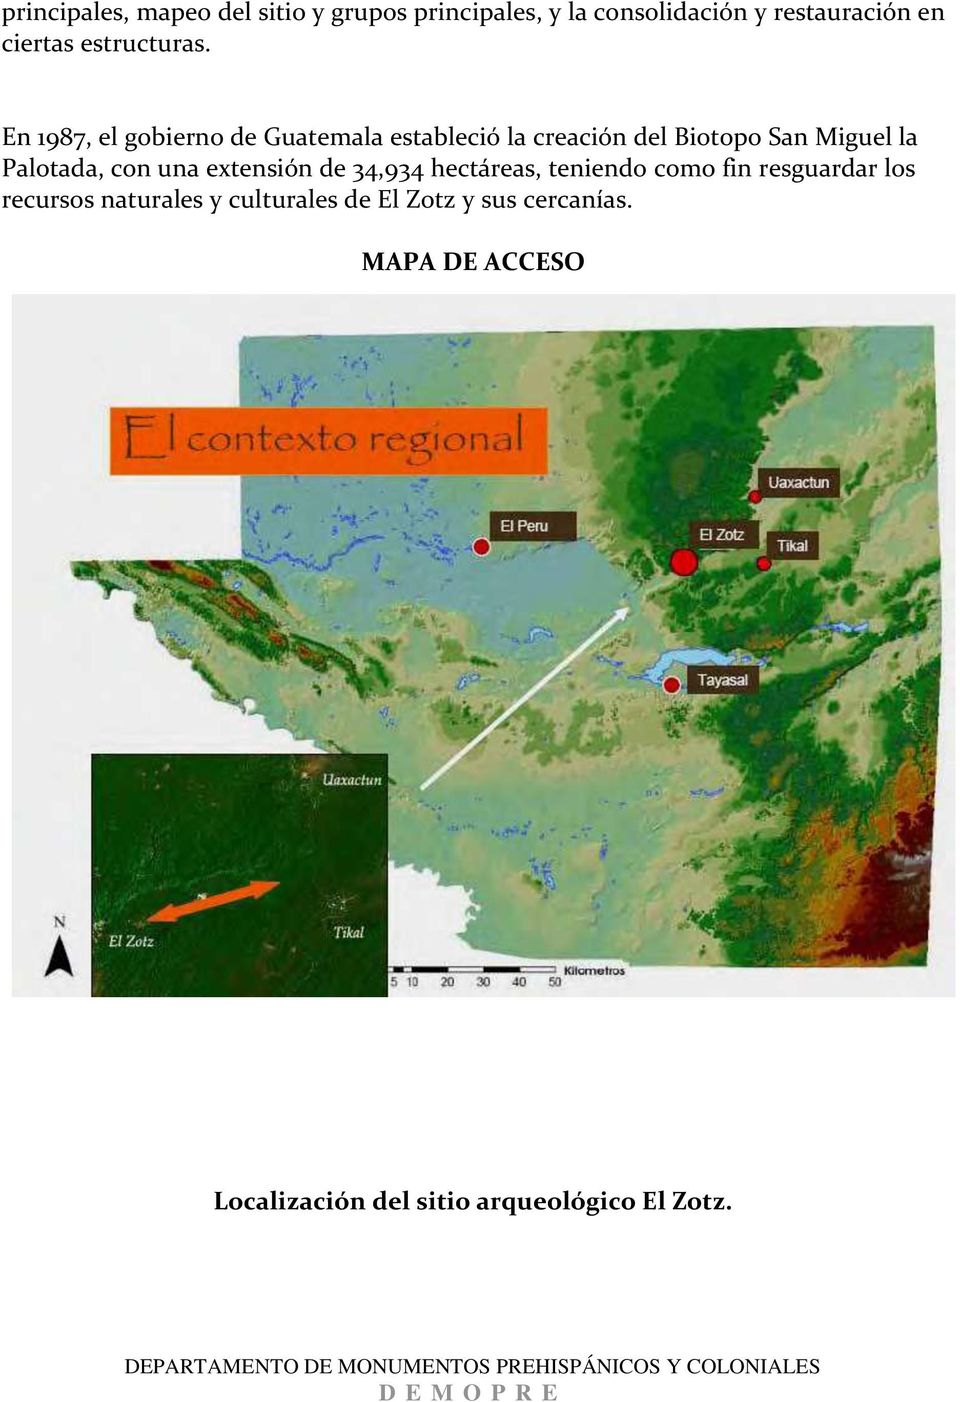 En 1987, el gobierno de Guatemala estableció la creación del Biotopo San Miguel la Palotada, con